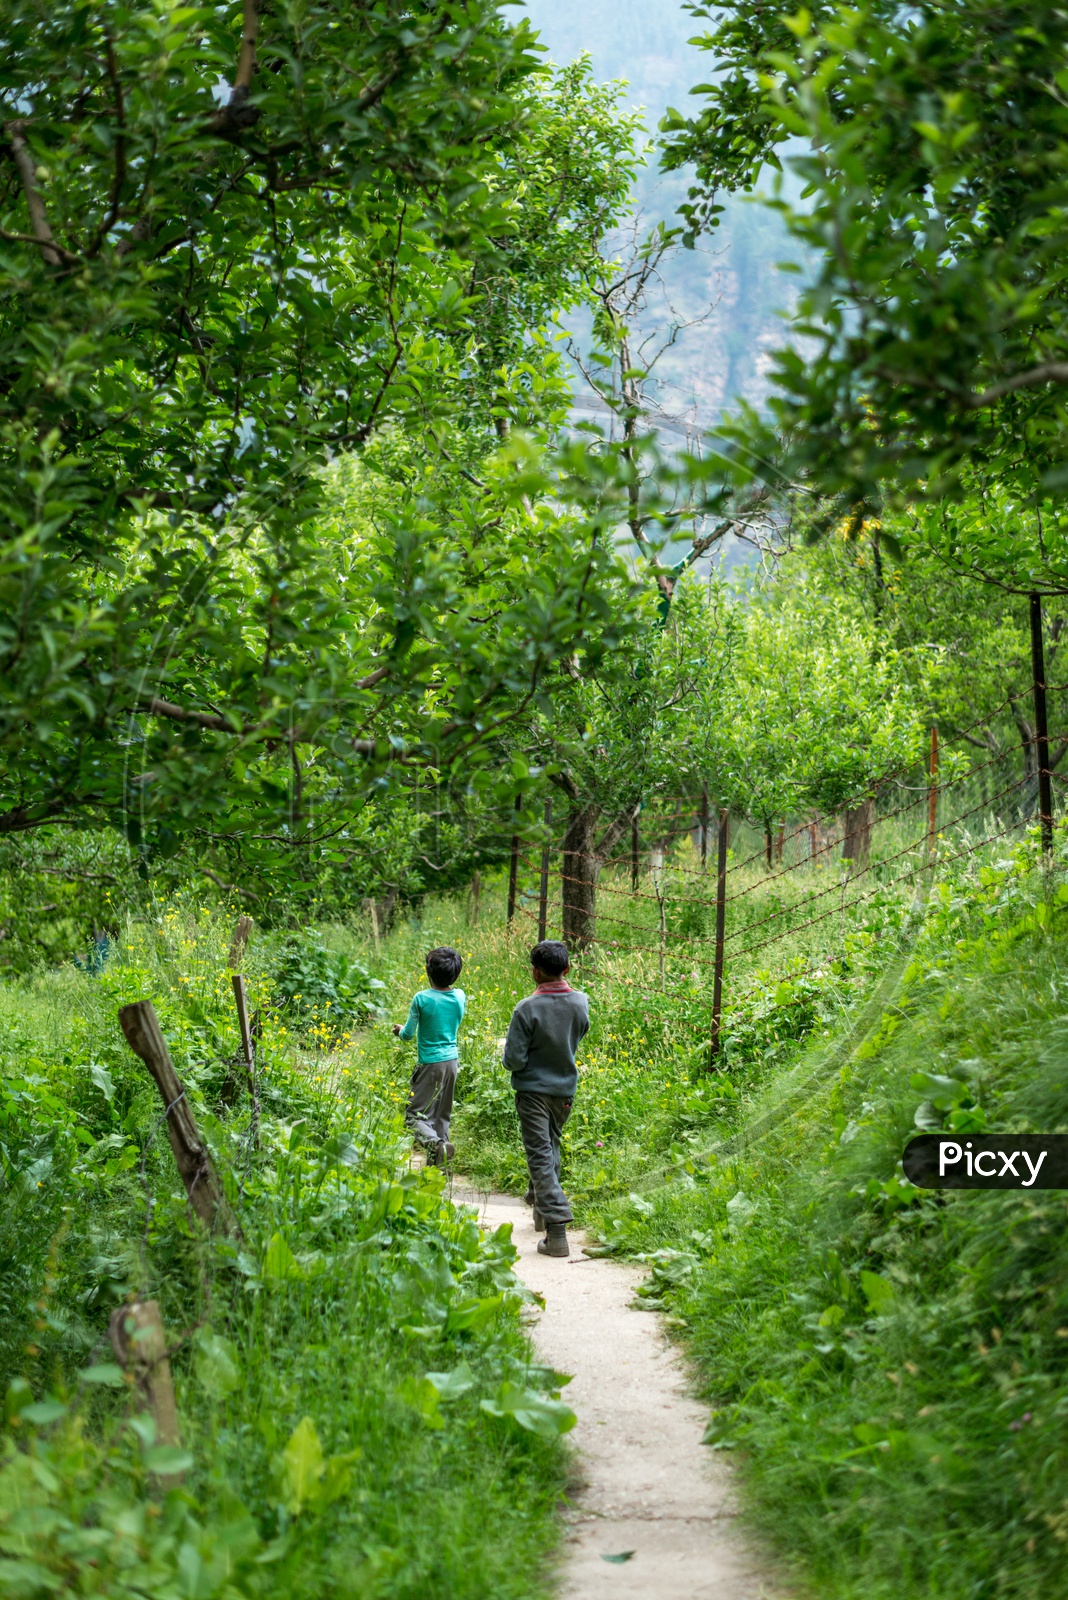 Indian Kids walking in an Apple Garden